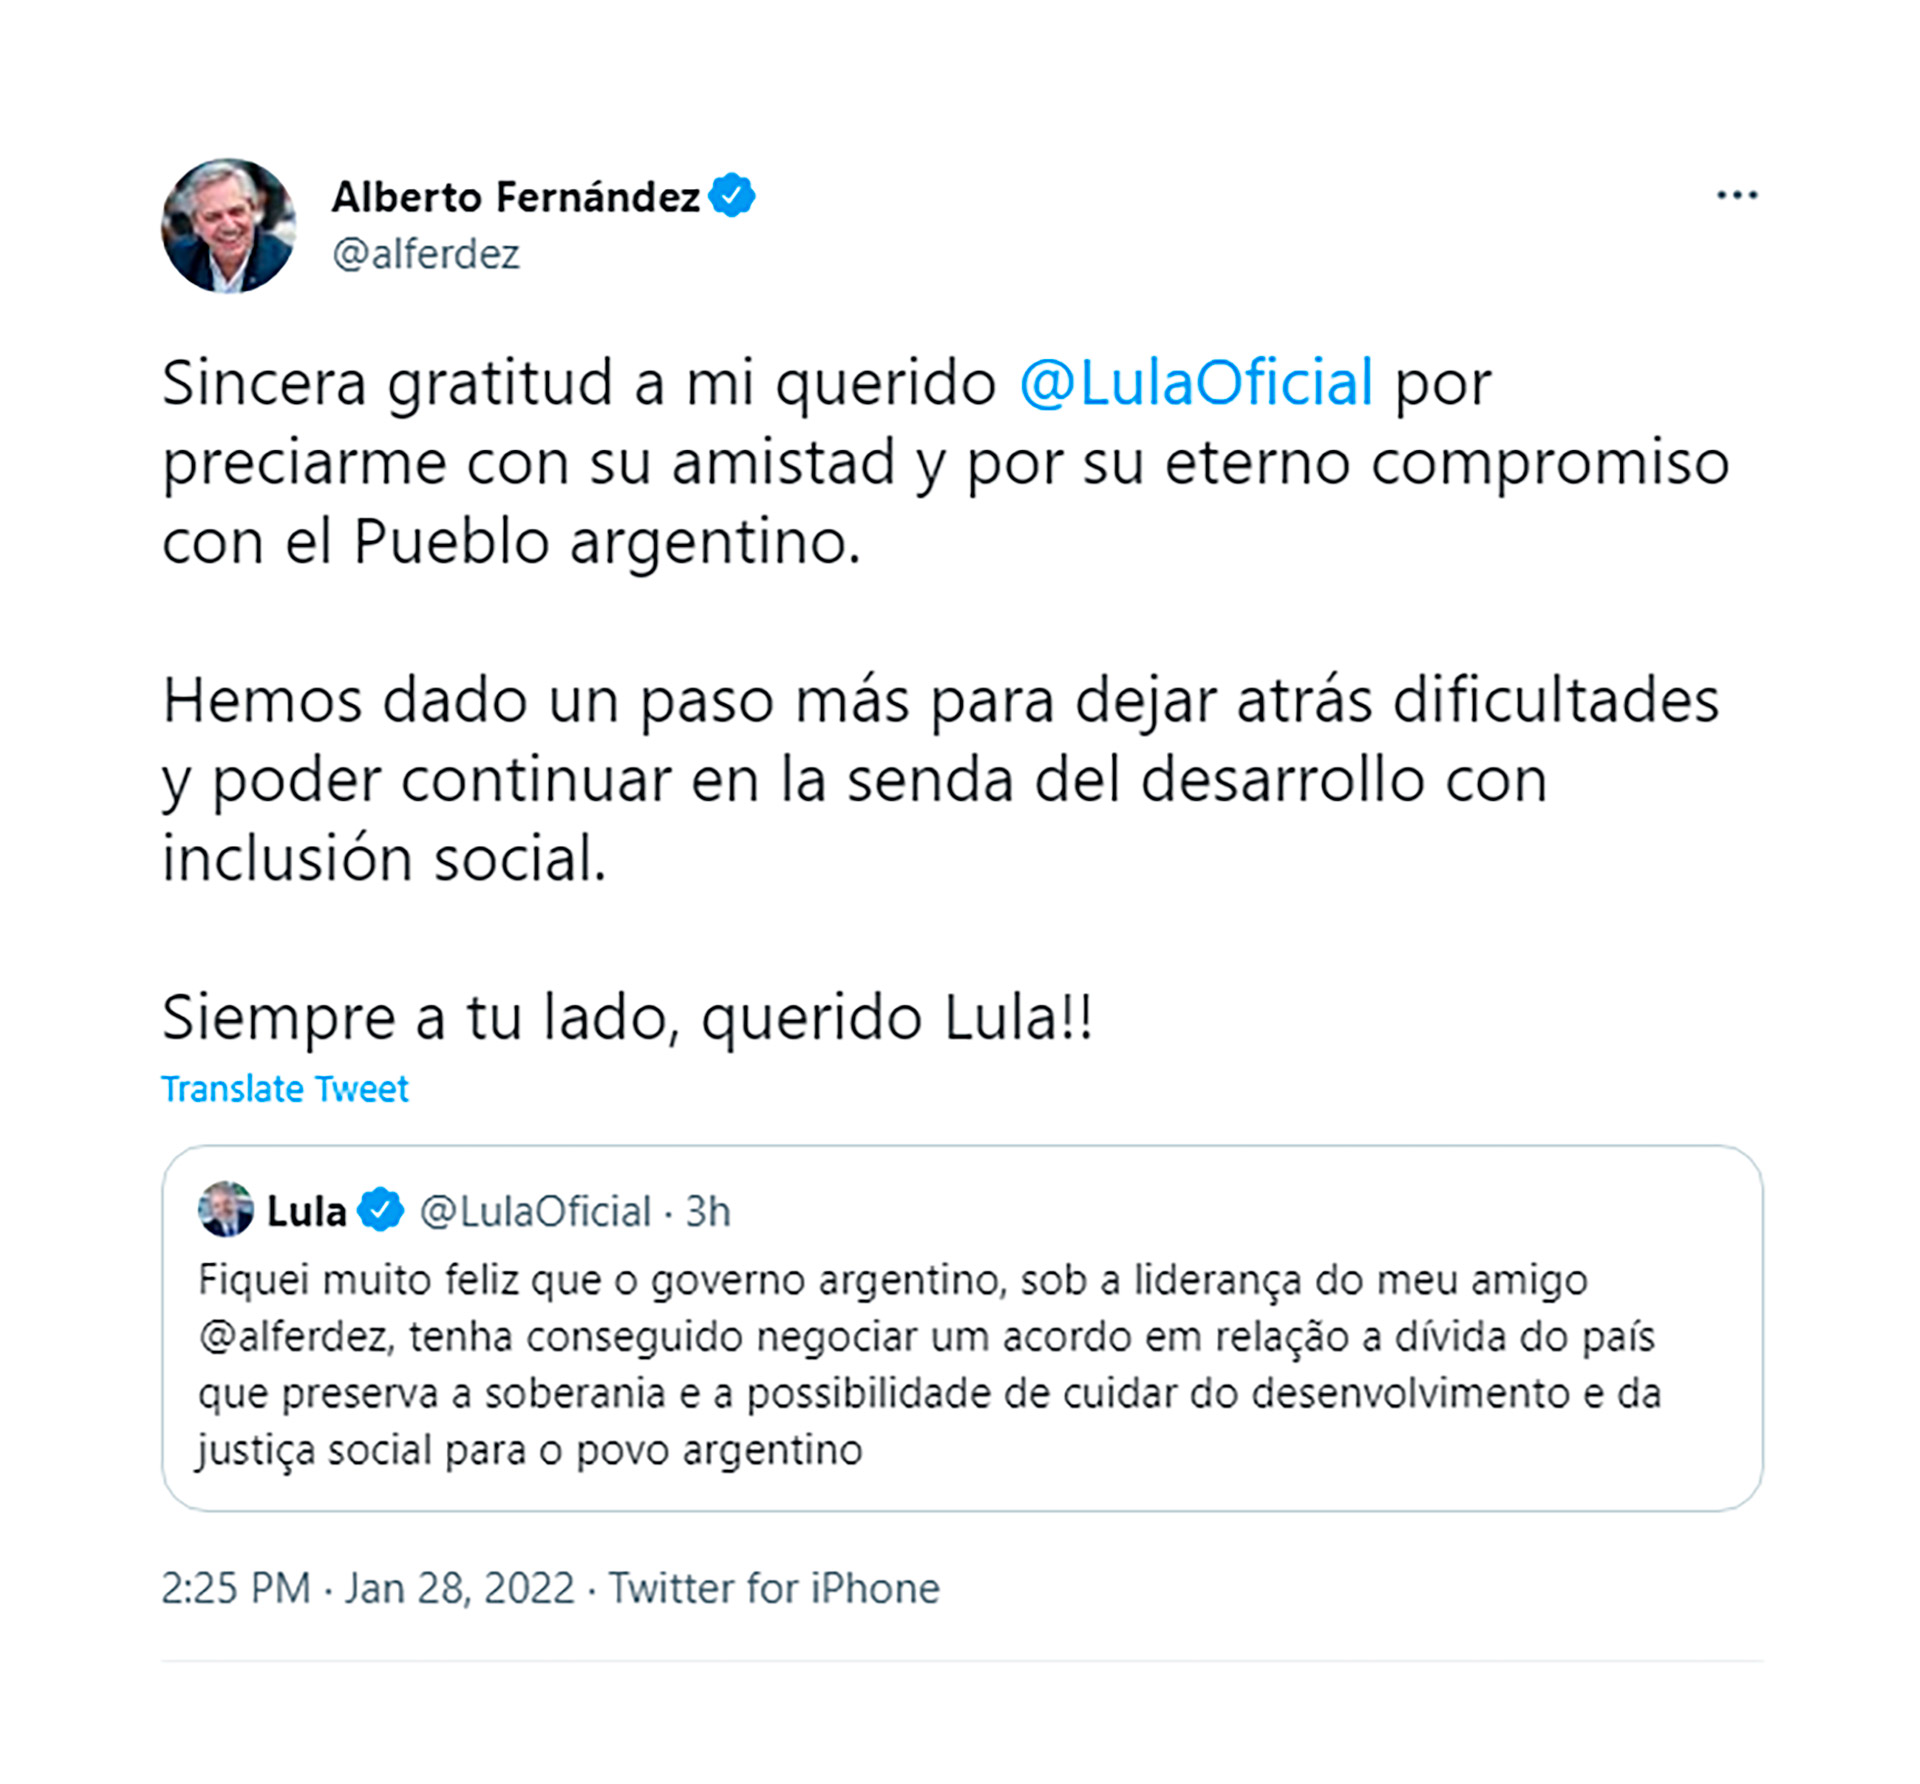 La respuesta del presidente argentino